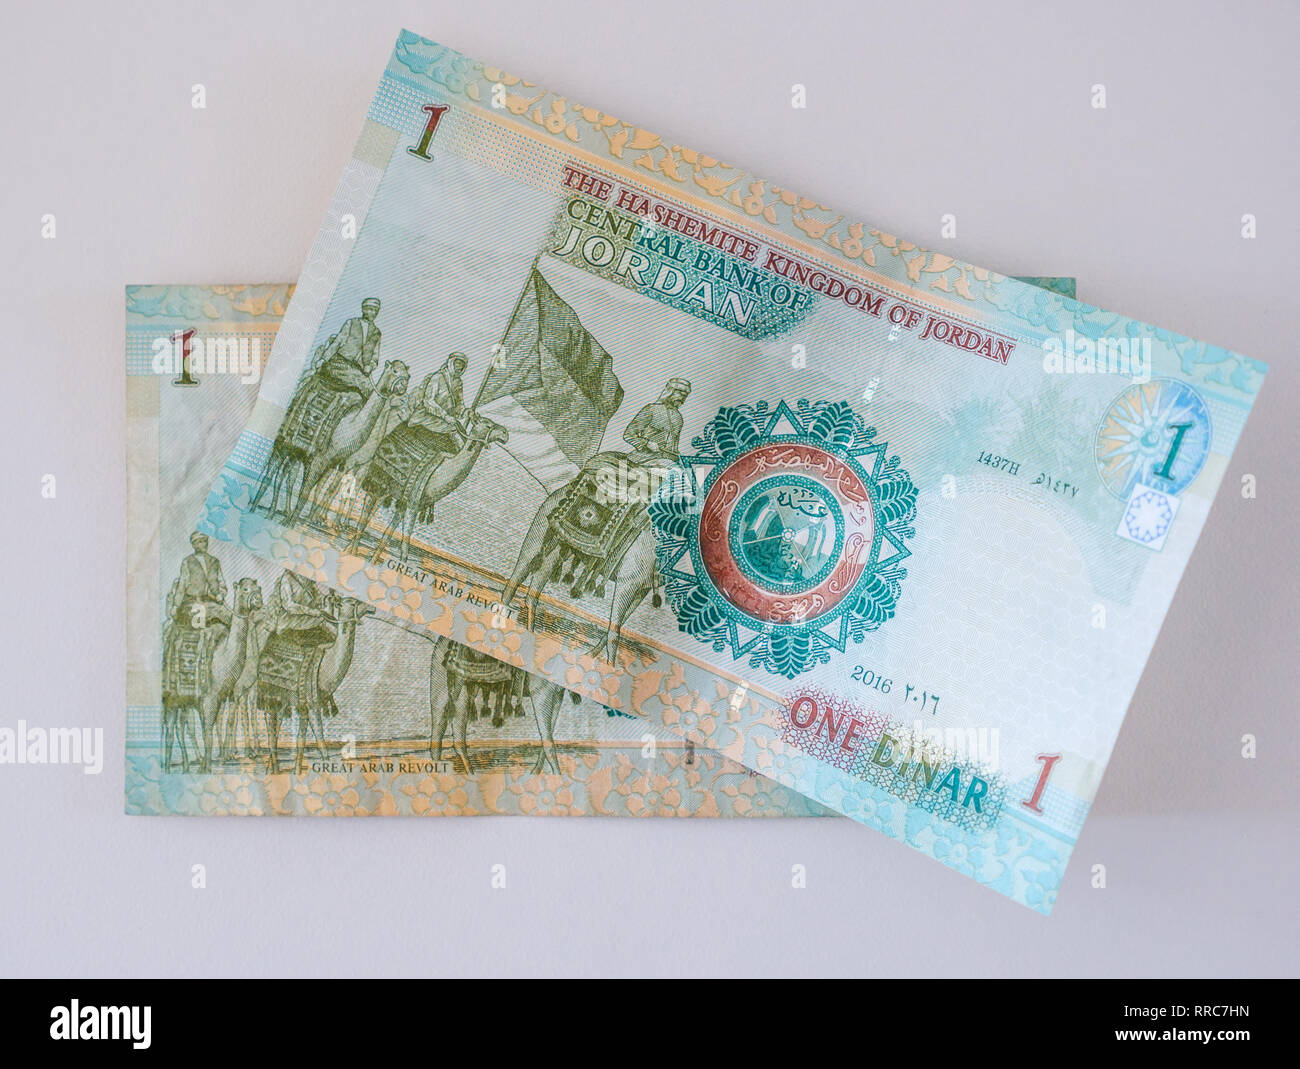 Ausländisches Geld Banknoten; Jordanische Dinar, 1 Dinar nimmt mit großer Arabischen Revolte (1916) Haschemitischen Königreich Jordanien Stockfoto